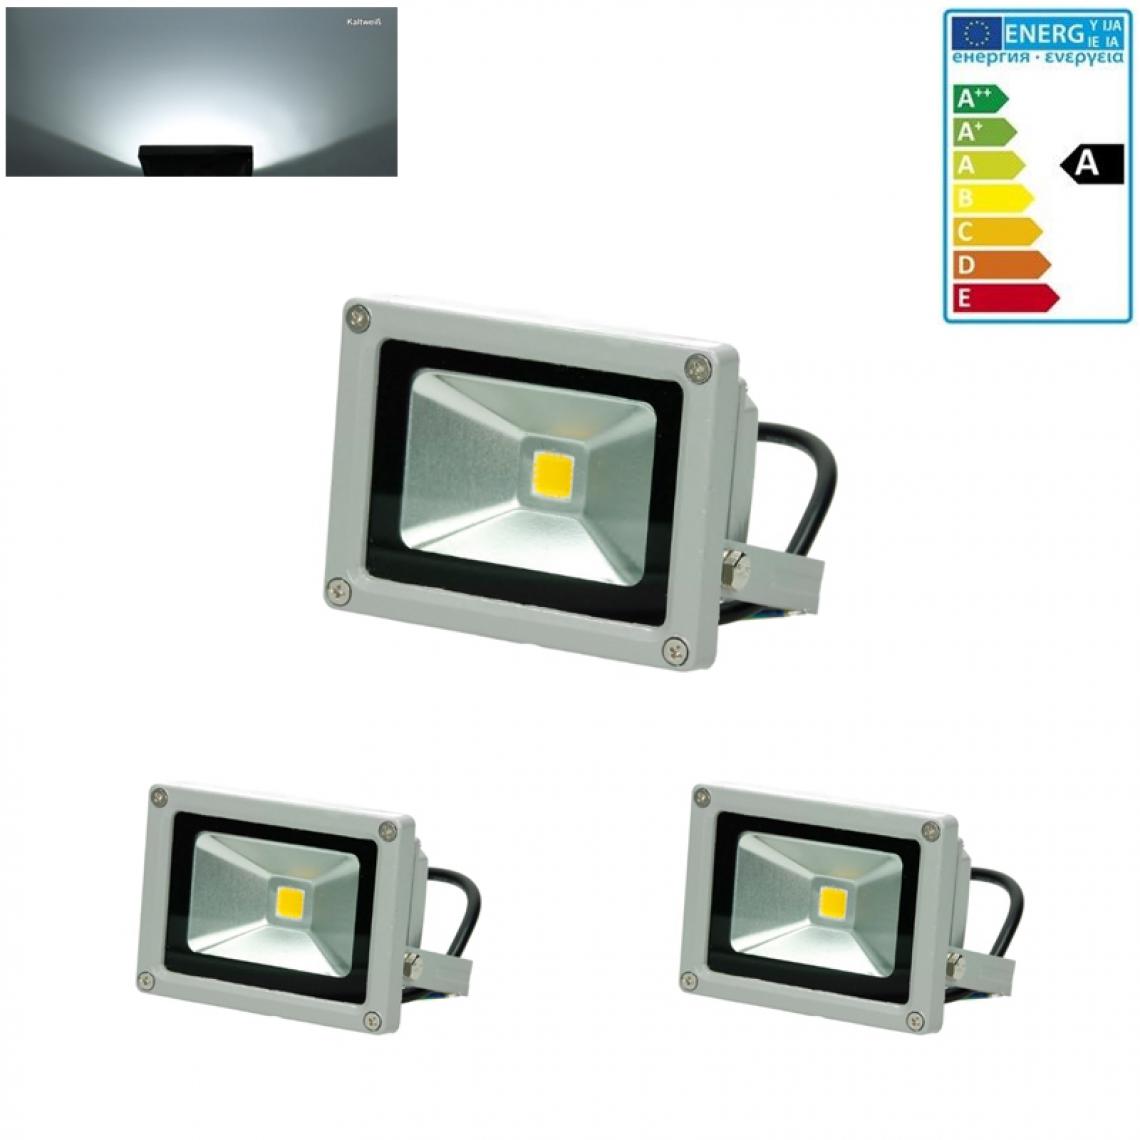 Ecd Germany - 2x LED Projecteur lumière extérieure spot éclairage 10W imperméable blanc froid - Projecteurs LED